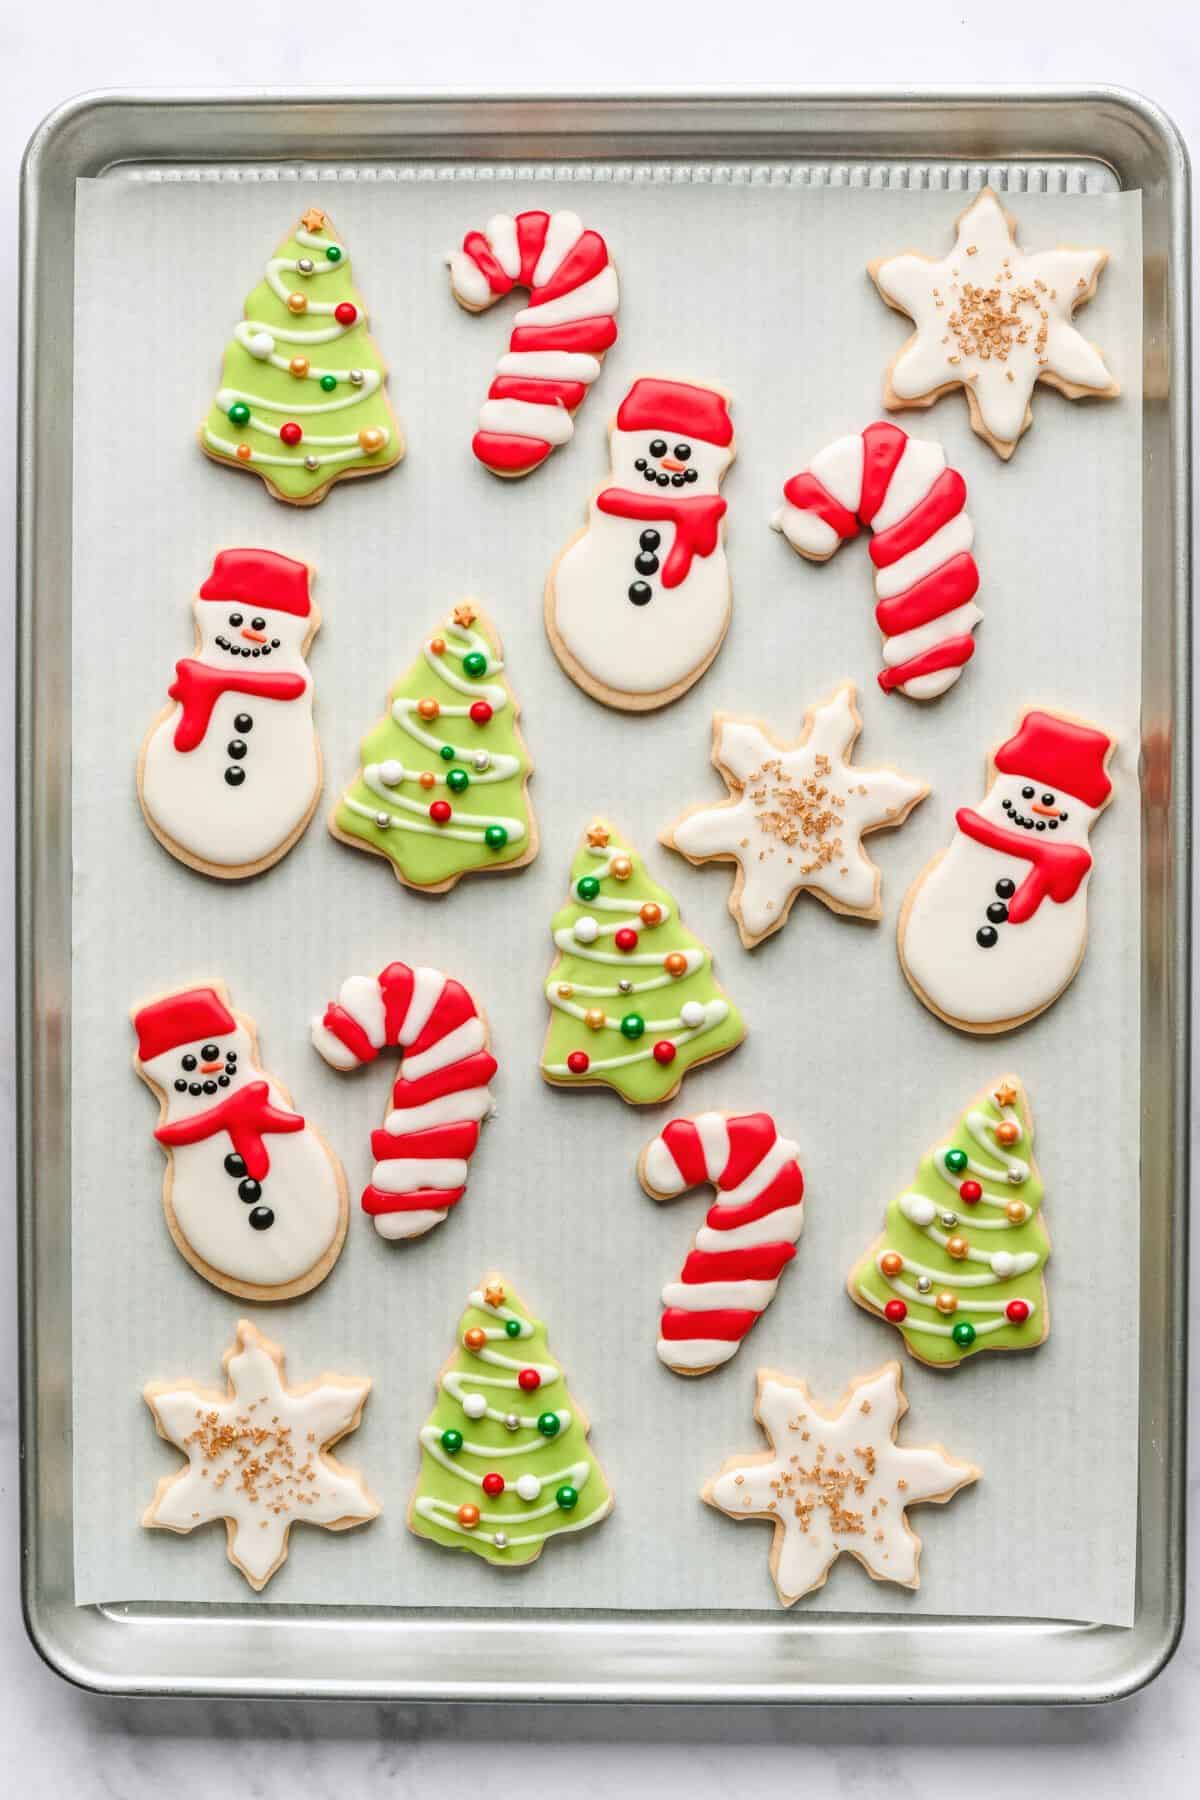 Sugar Cookie and Royal Icing Holiday Sugar Cookie Dipping Kits